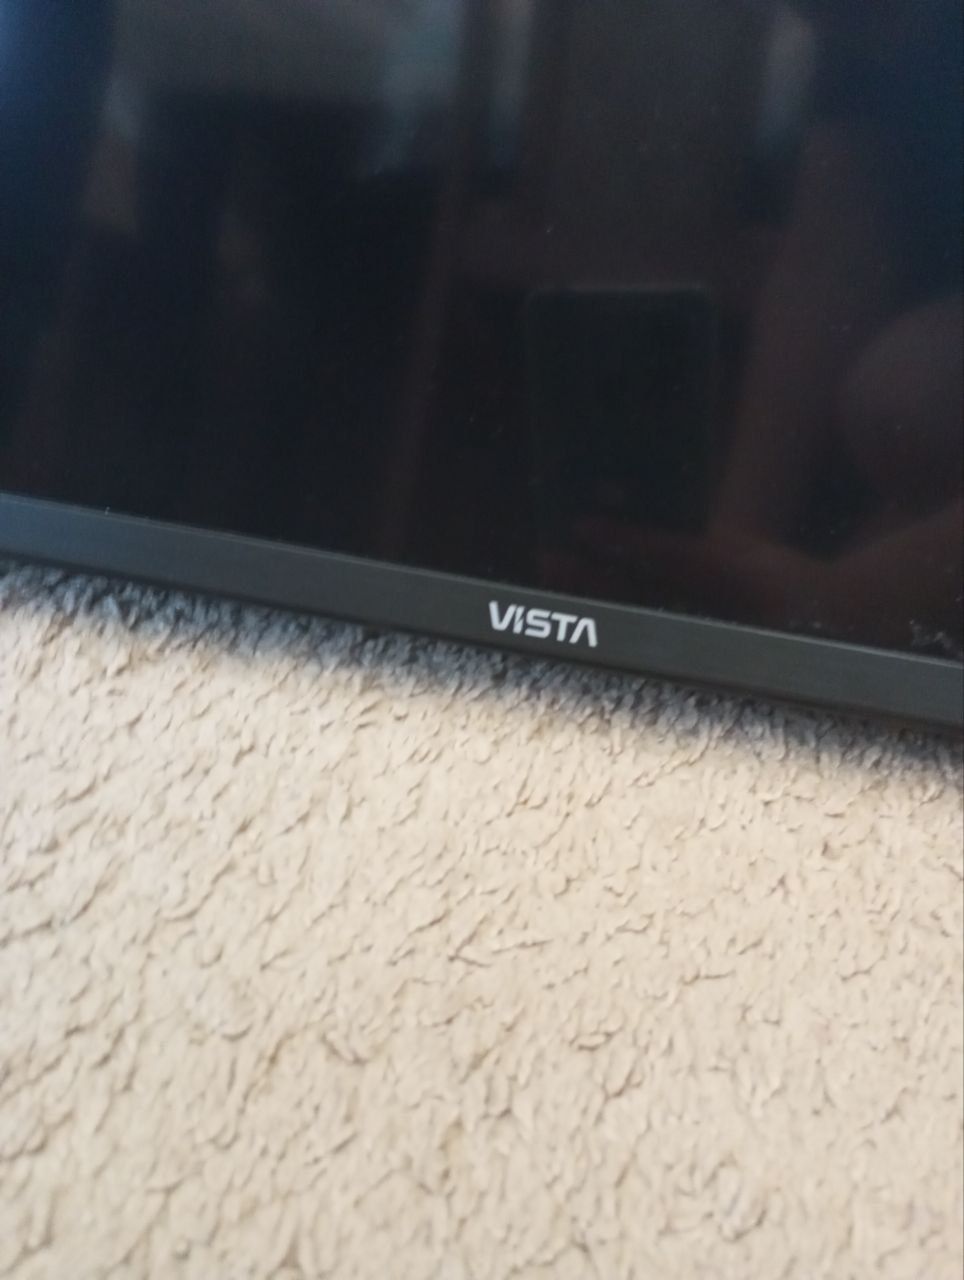 Срочно продам плазменный телевизор,модель Vista 58